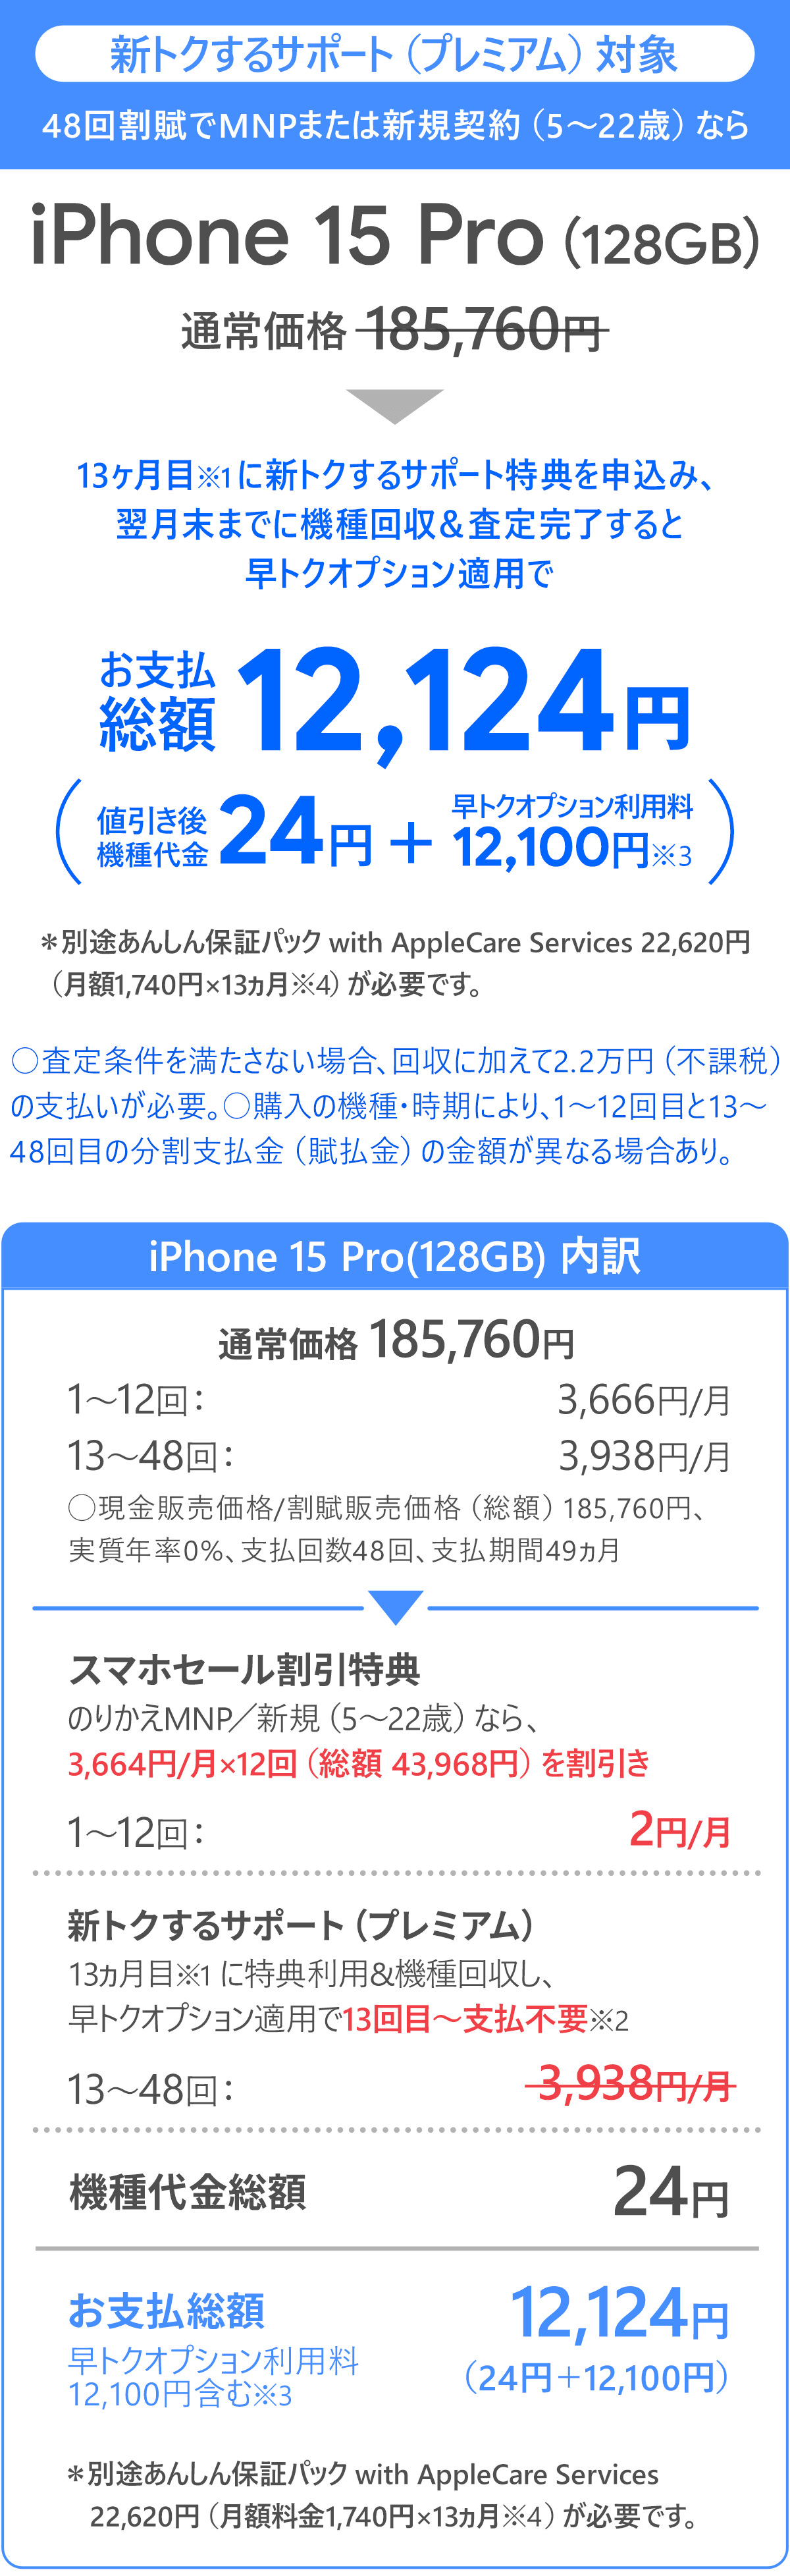 ソフトバンク「iPhone 15 Pro 128GB」大セール